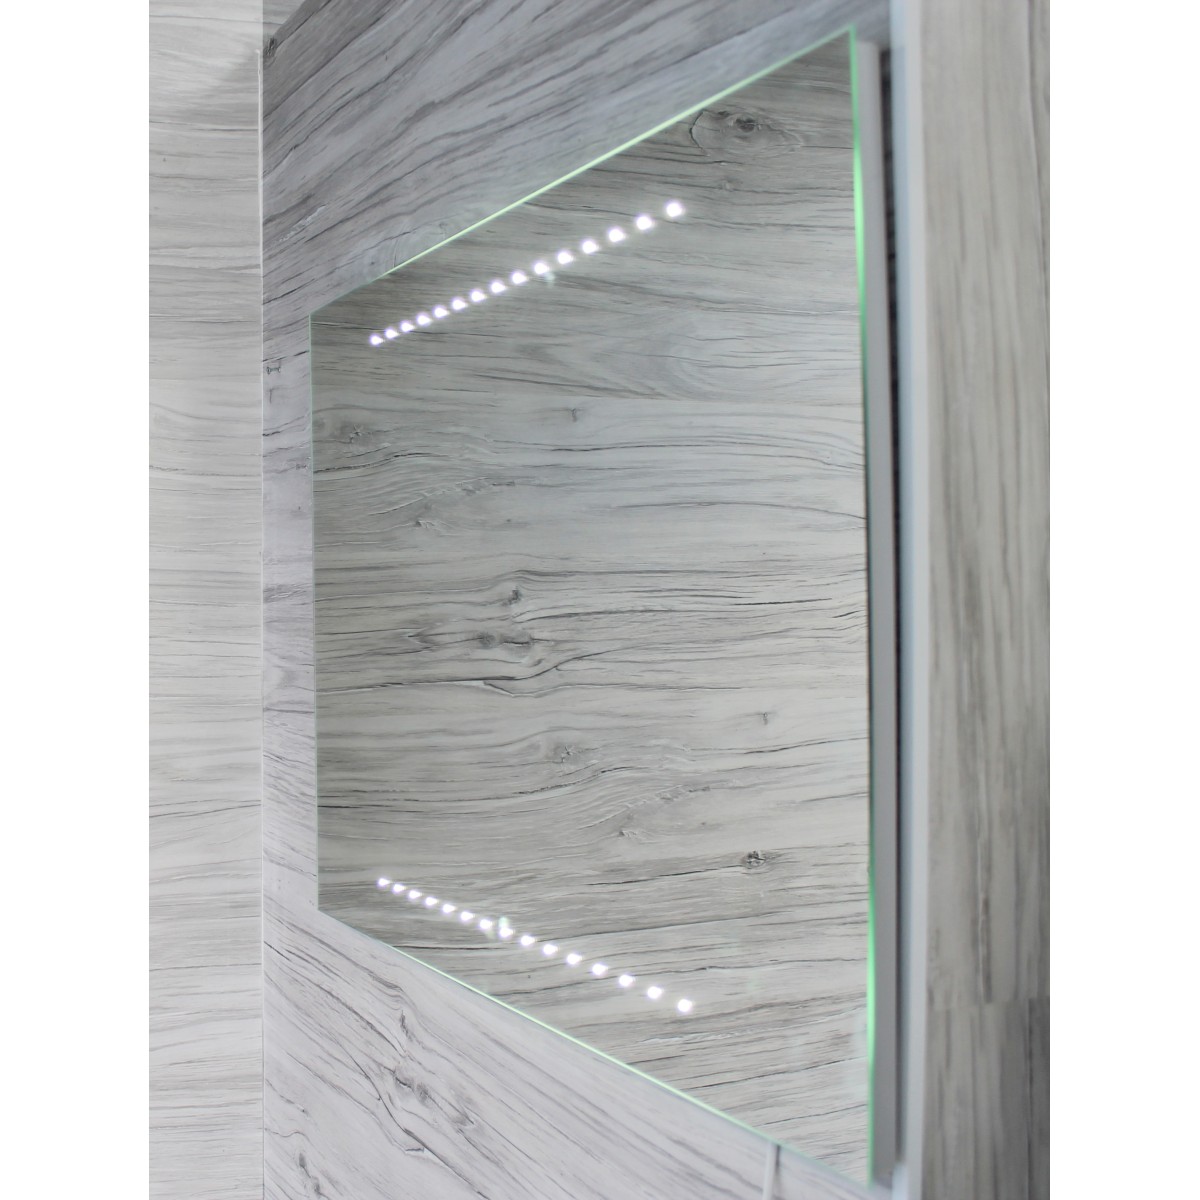 Specchio da bagno 60 x 80 cm( L x H) con luci led